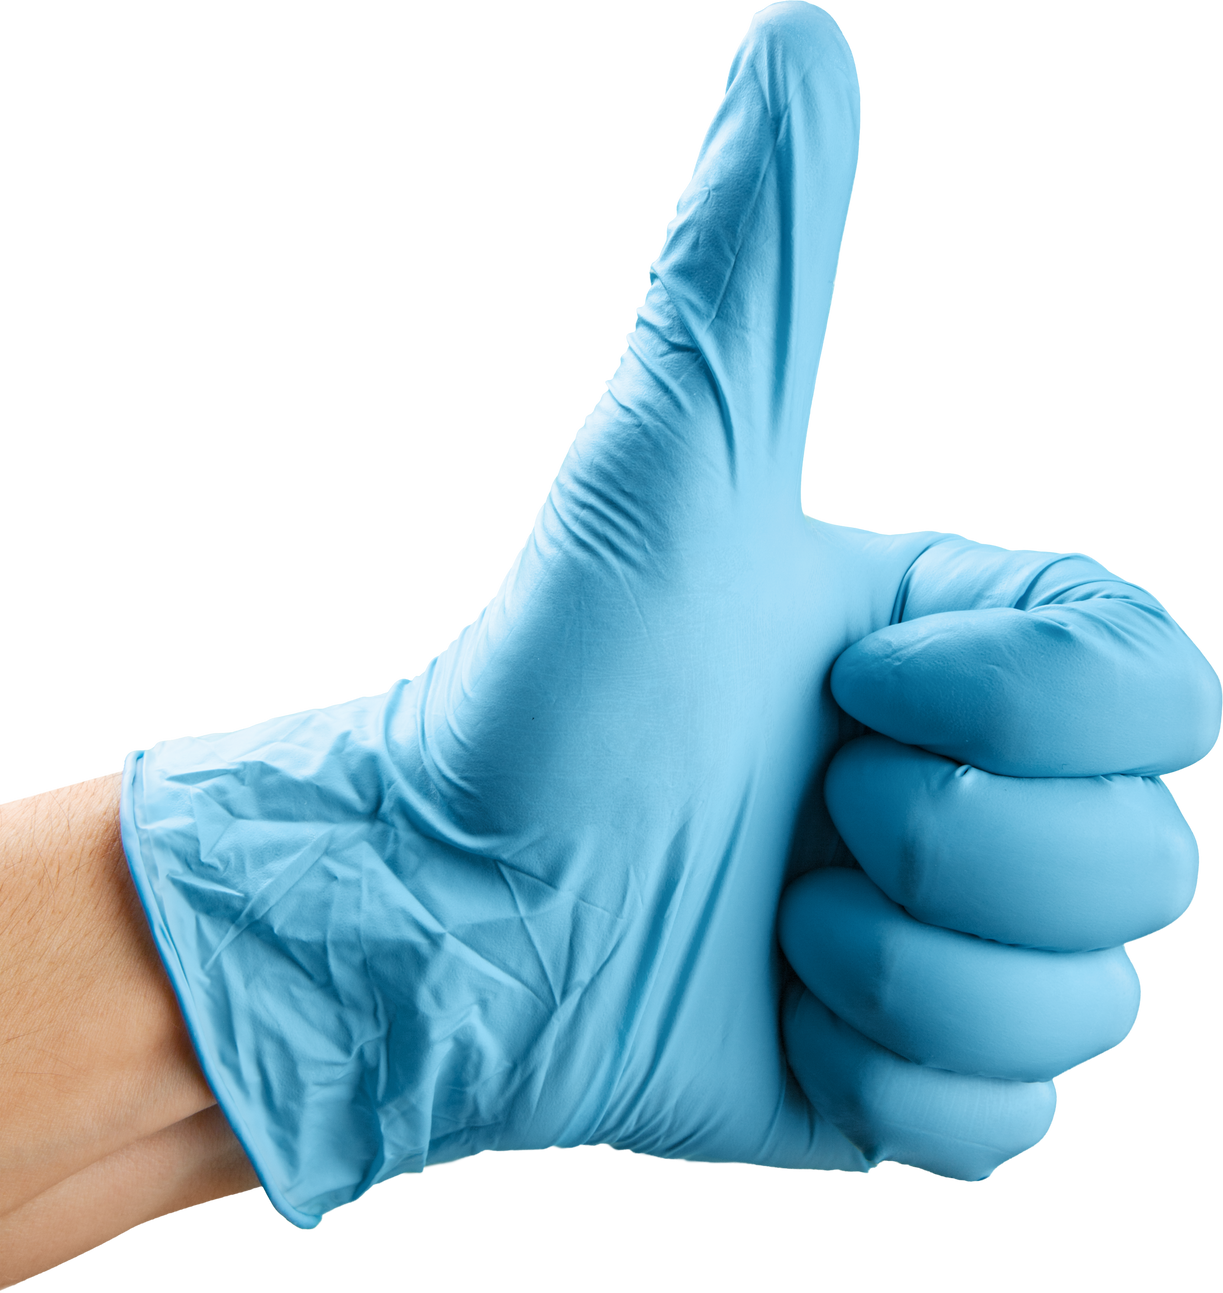 Blue Nitrile Medical Gloves on Doctor Hand